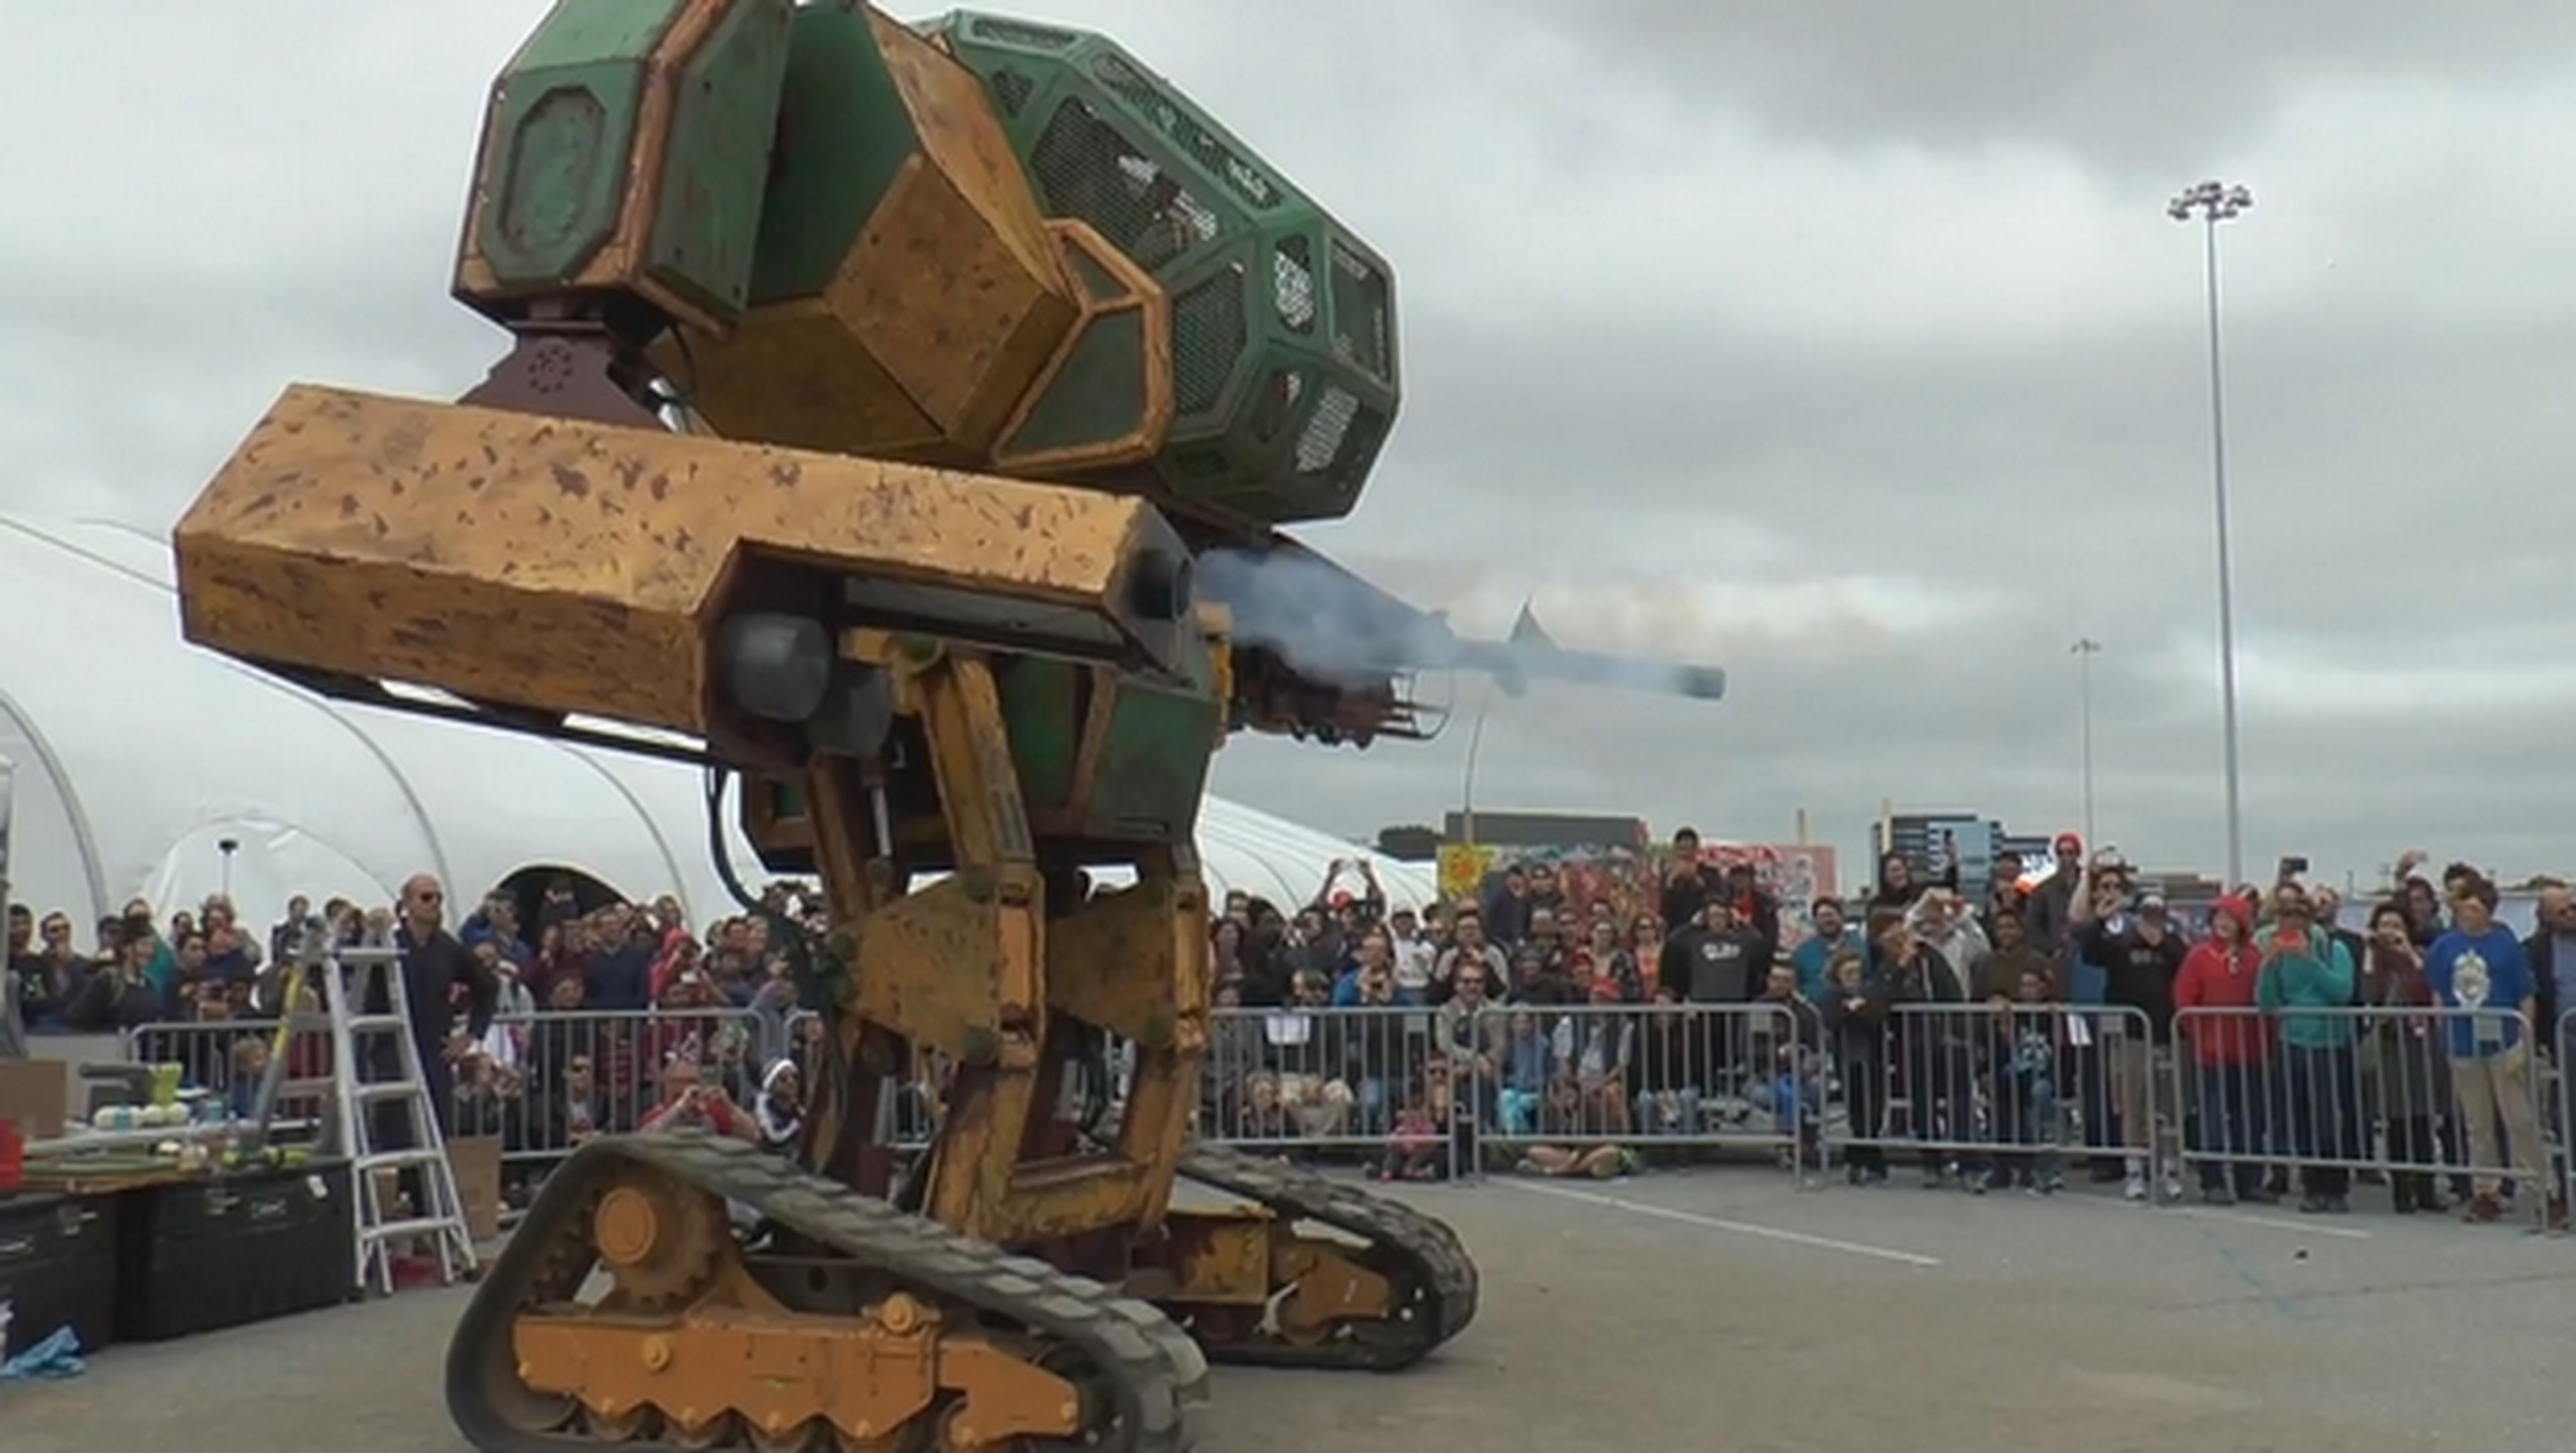 MegaBots contra Kuratas. Robots de 6 metros pilotados por humanos lucharán a muerte.